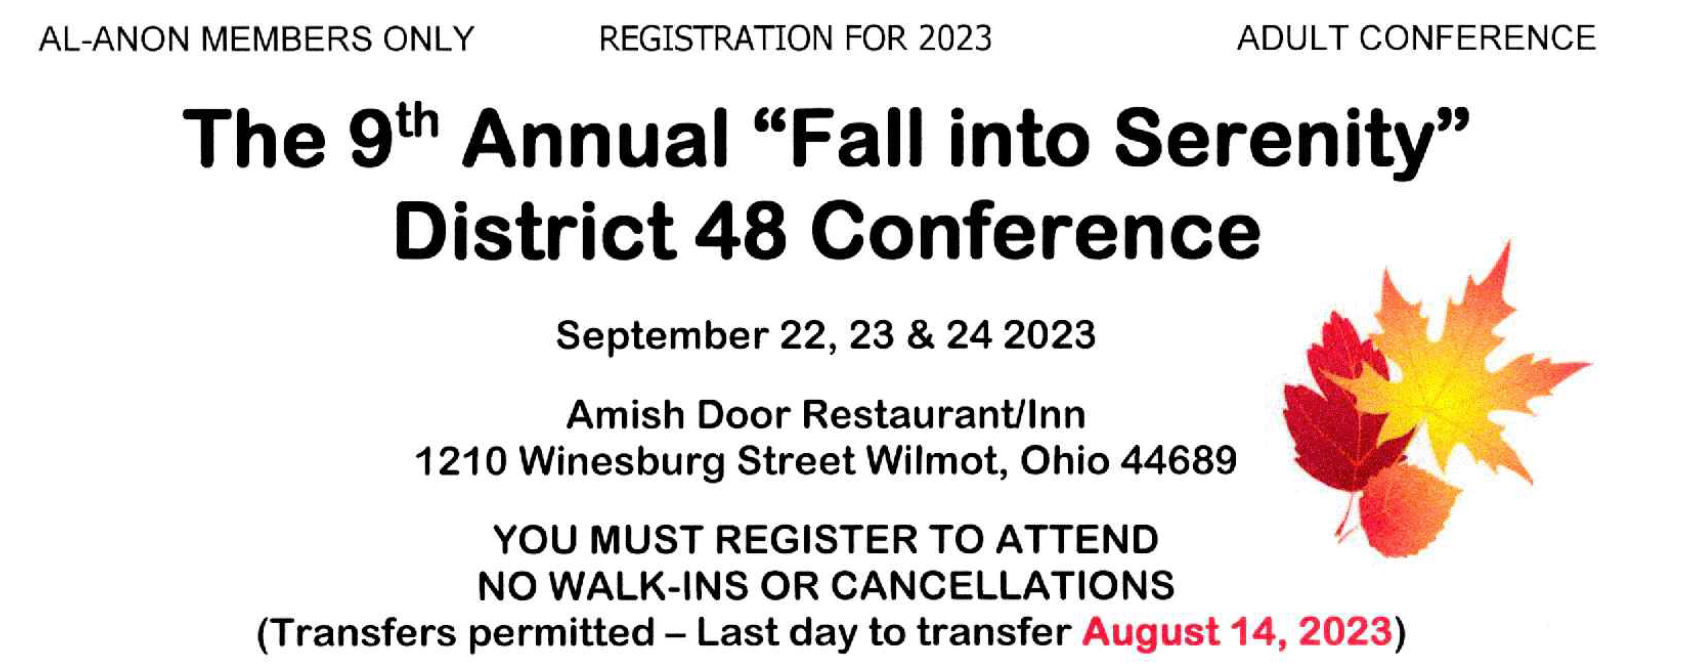 Fall into Serenity Al-Anon Conference